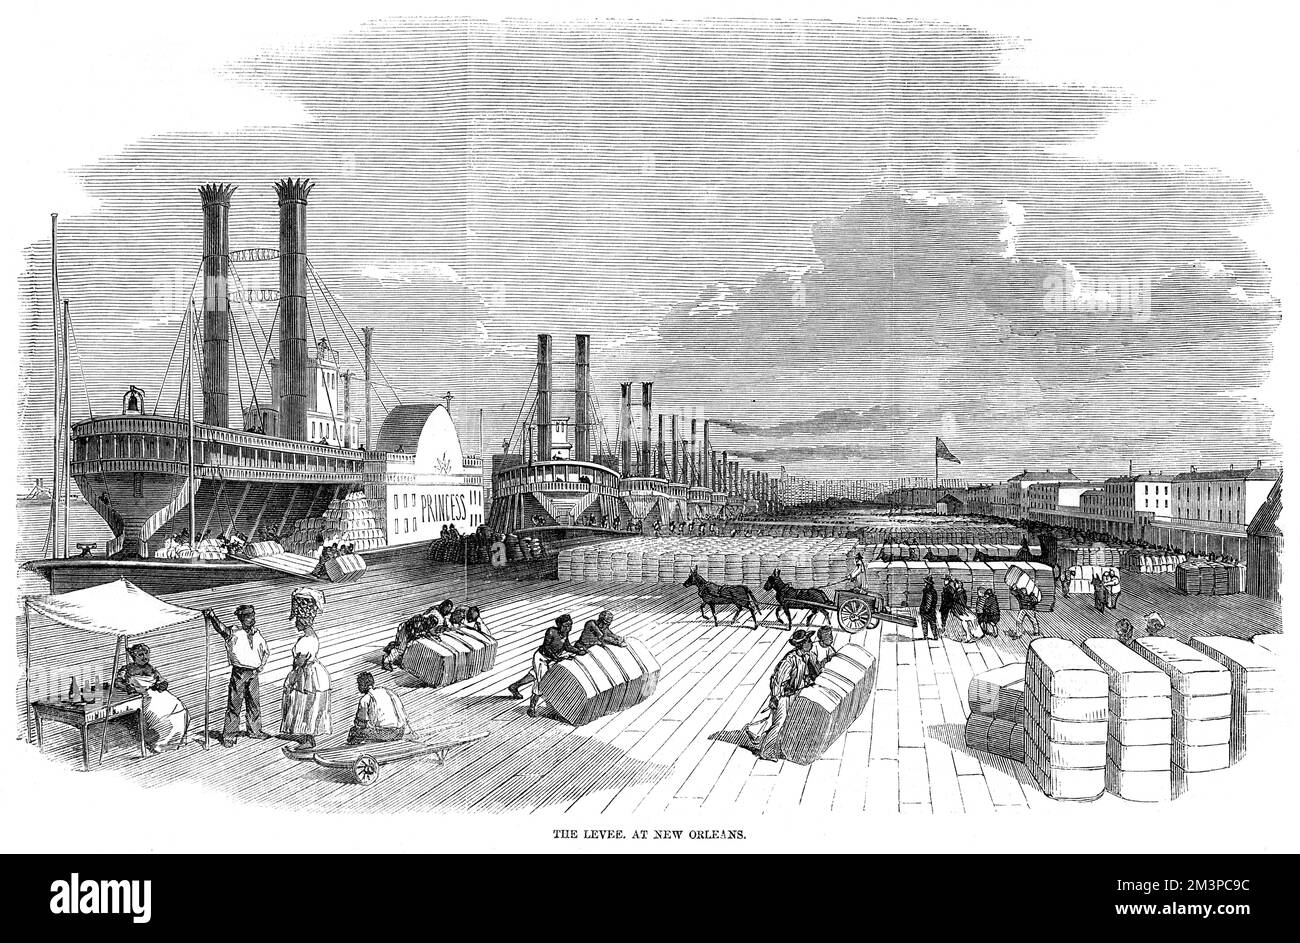 Der Deich in New Orleans mit Sklaven, die Baumwollballen und andere Produkte einziehen. Es gibt eine große Menschenmenge von Dampfbooten und Schiffen, die sich kilometerweit entlang des Deichs erstrecken. Datum: 1858 Stockfoto